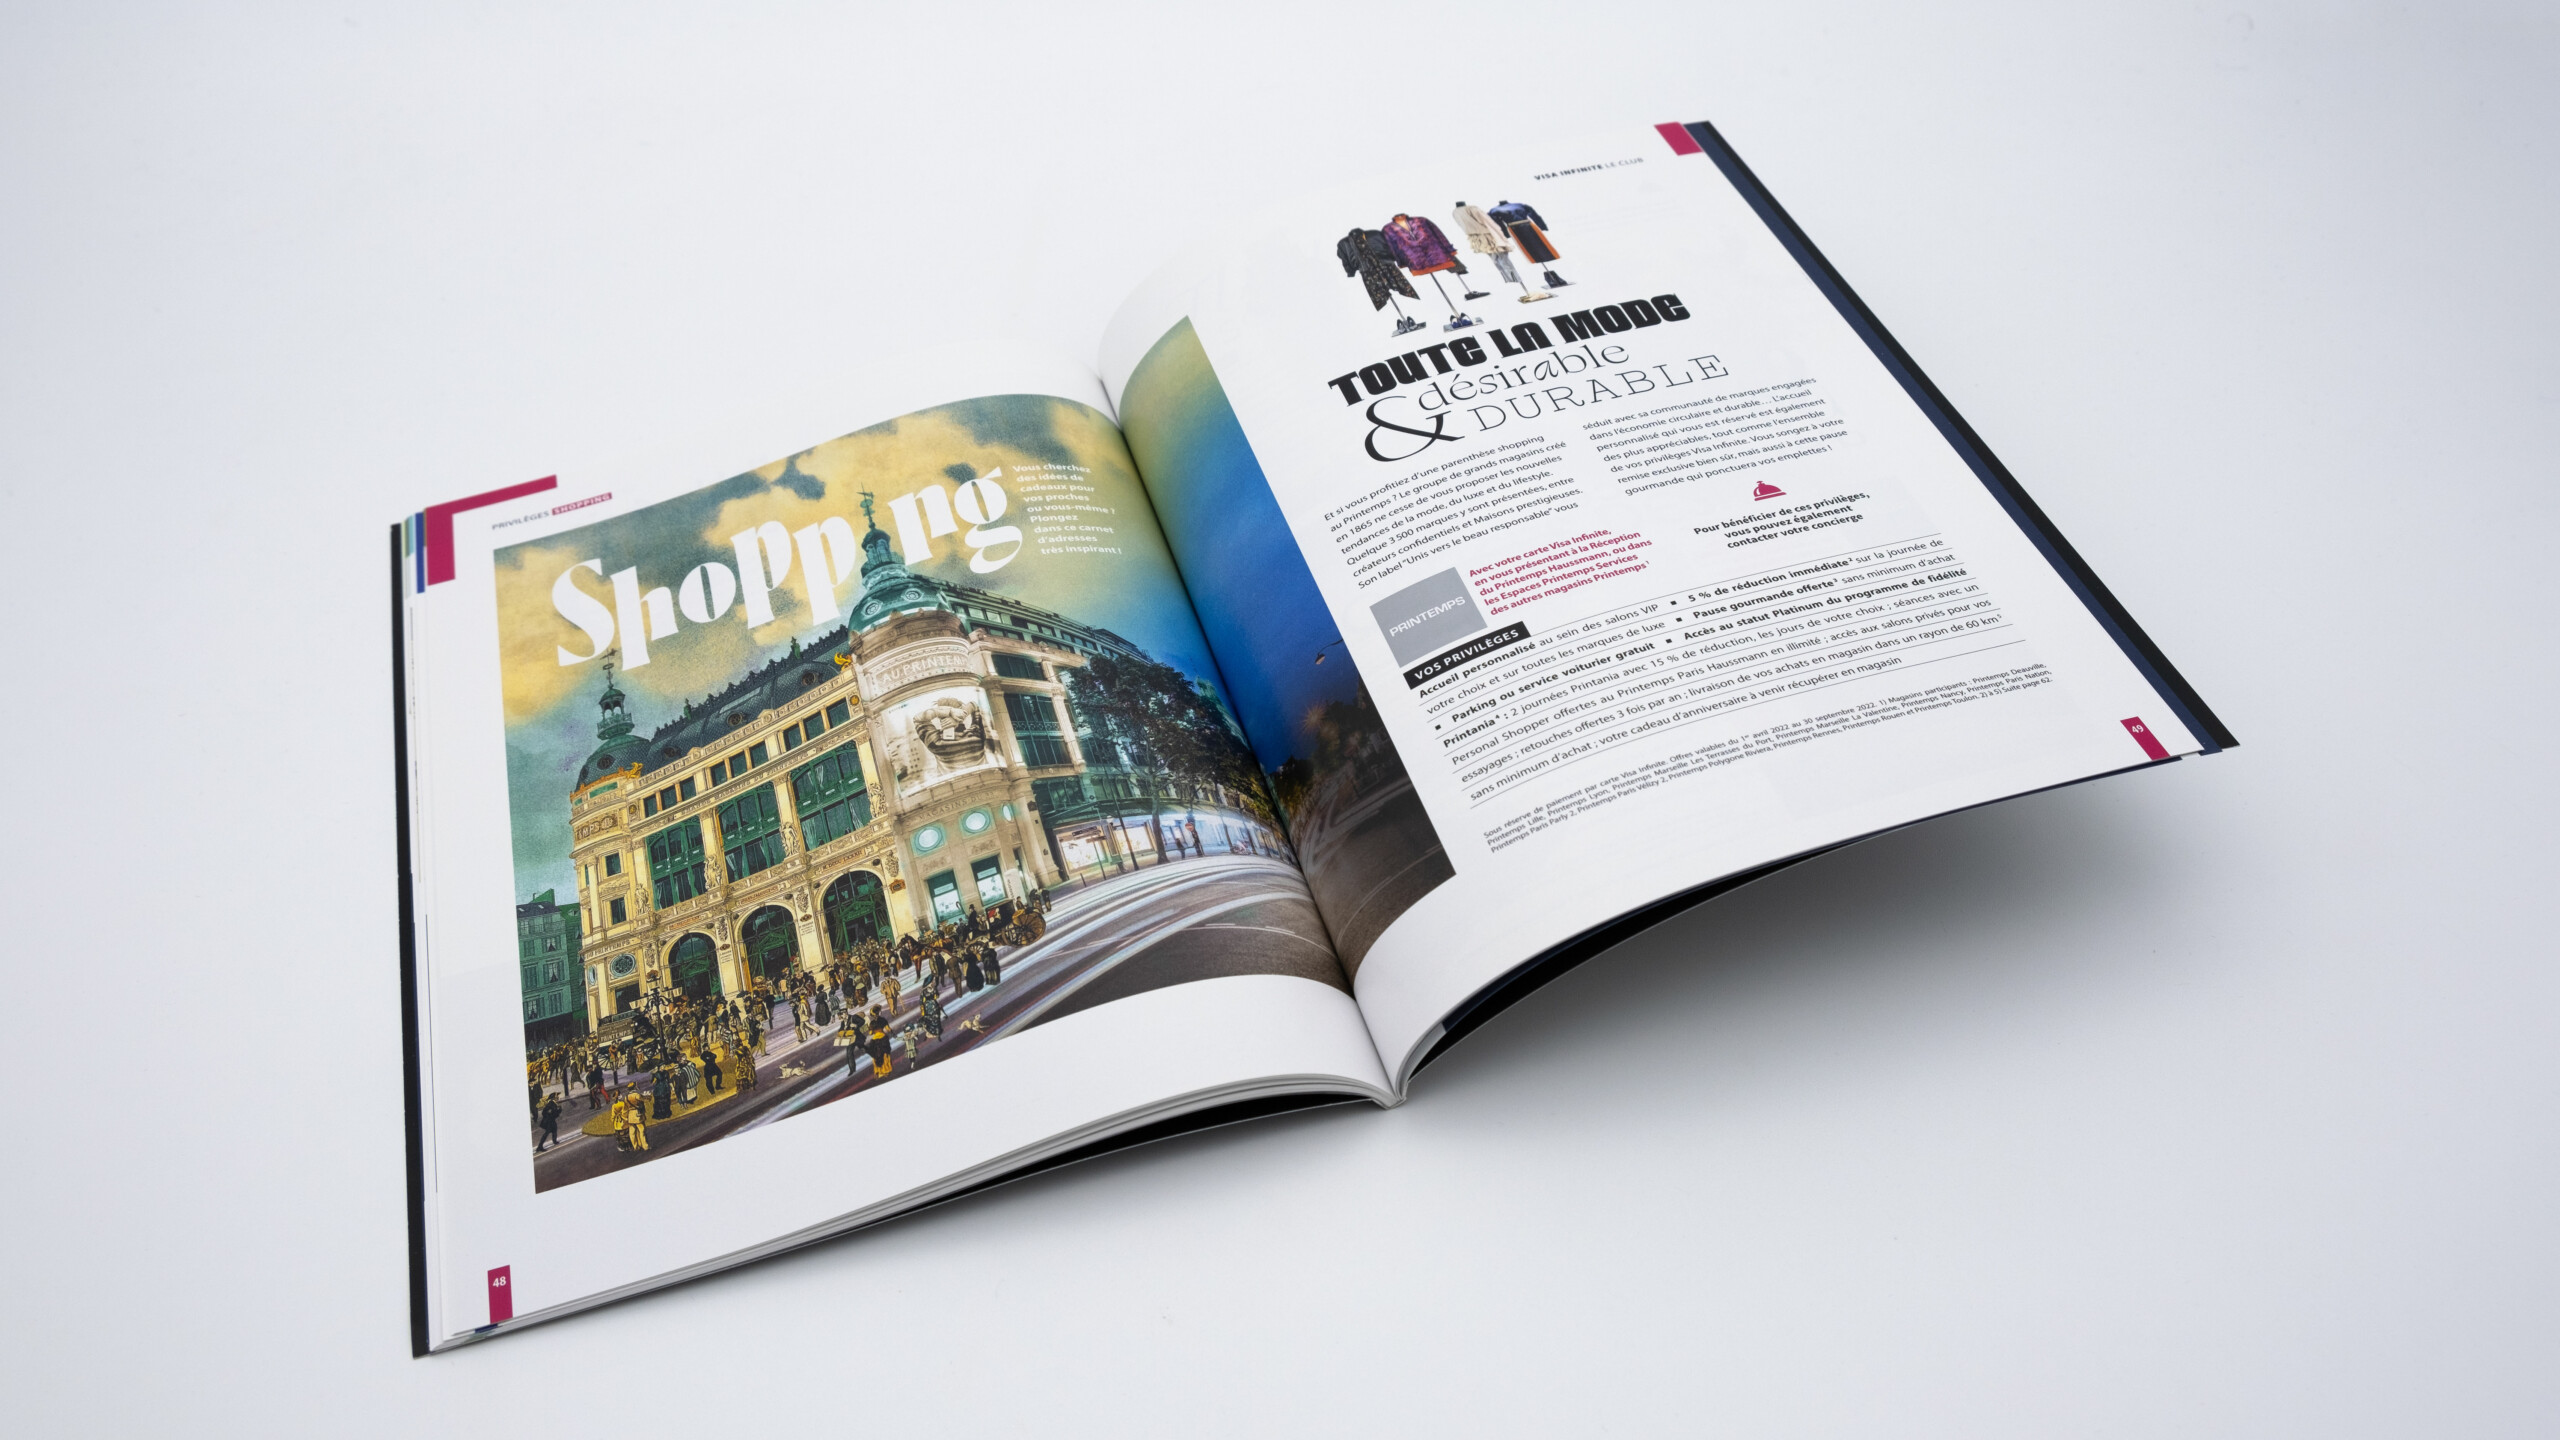 Double page d'ouverture de rubrique shopping consacrée au Printemps Haussmann à Paris.